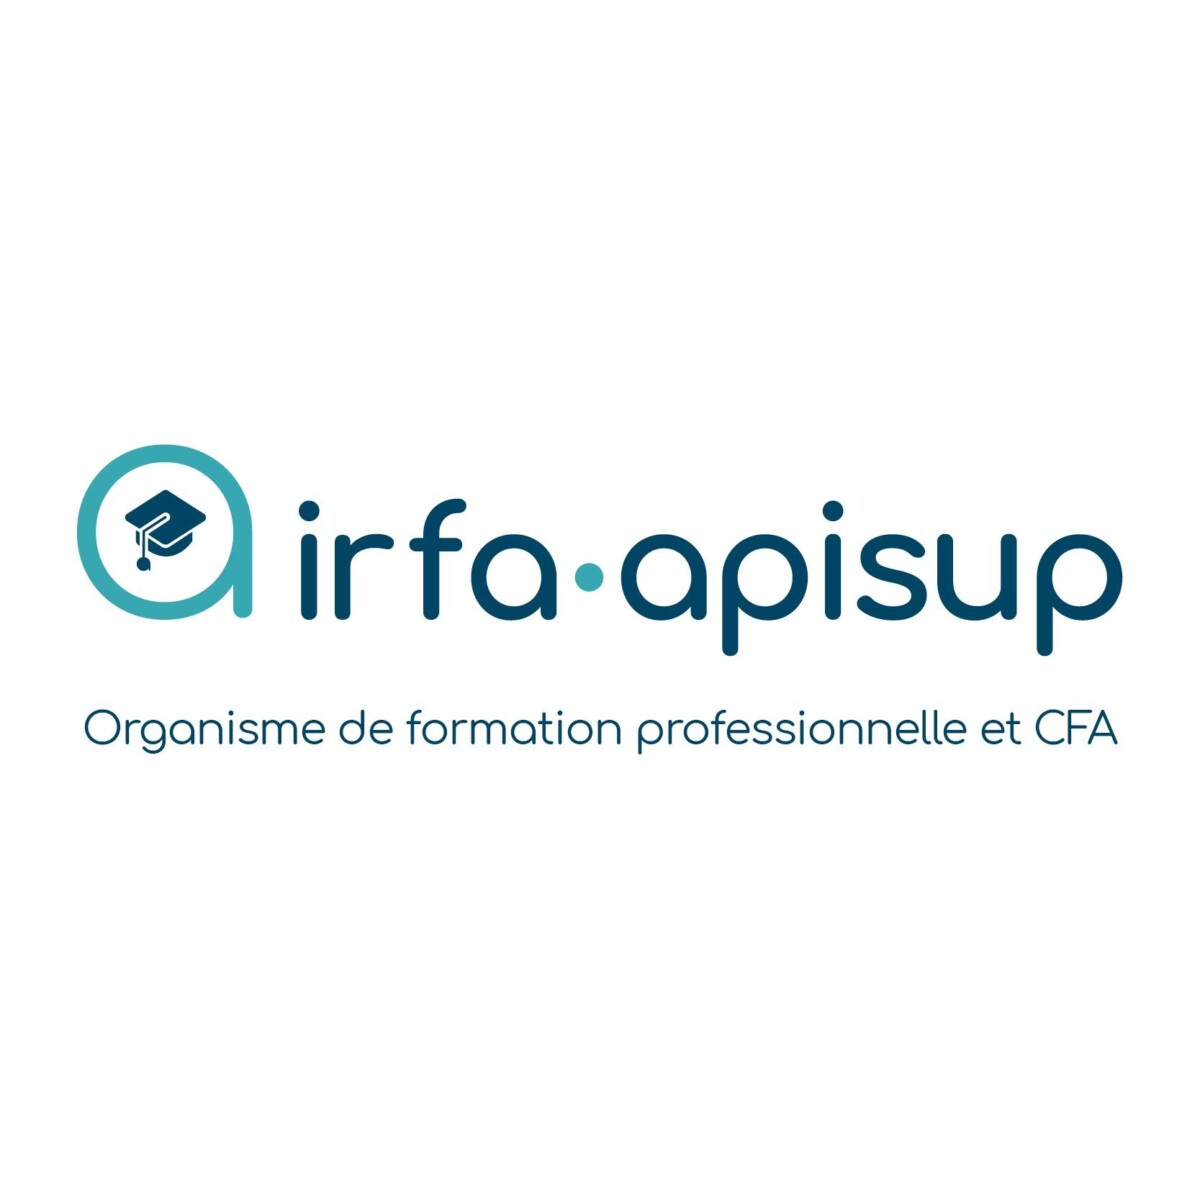 IRFA APISUP